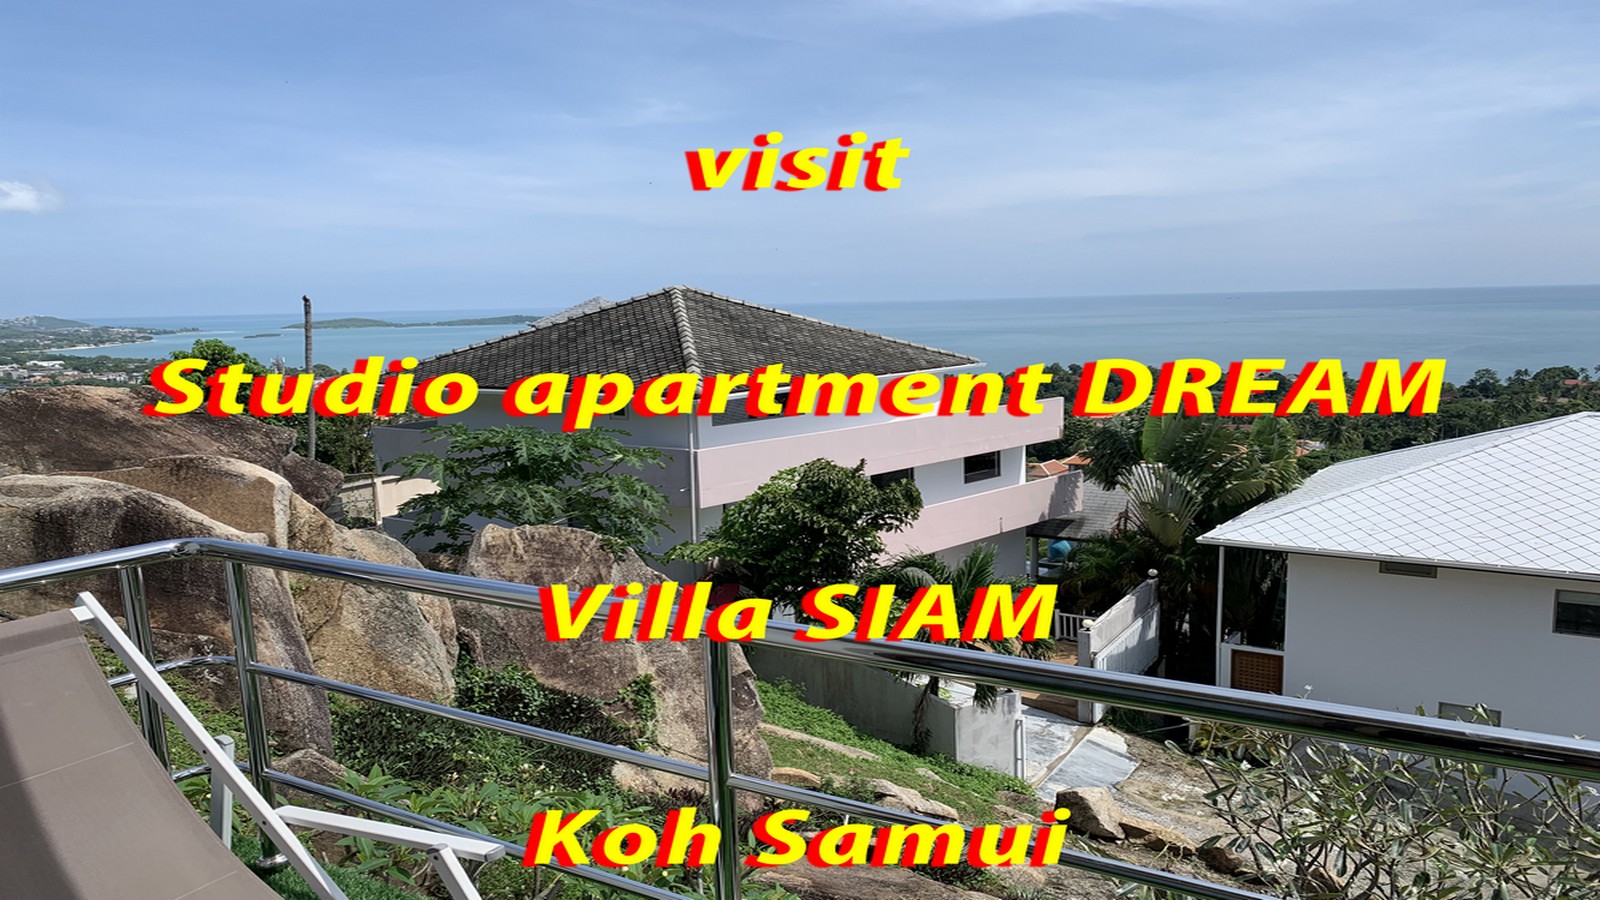 studio apartment DREAM intro rental prices long term digital nomad sea view